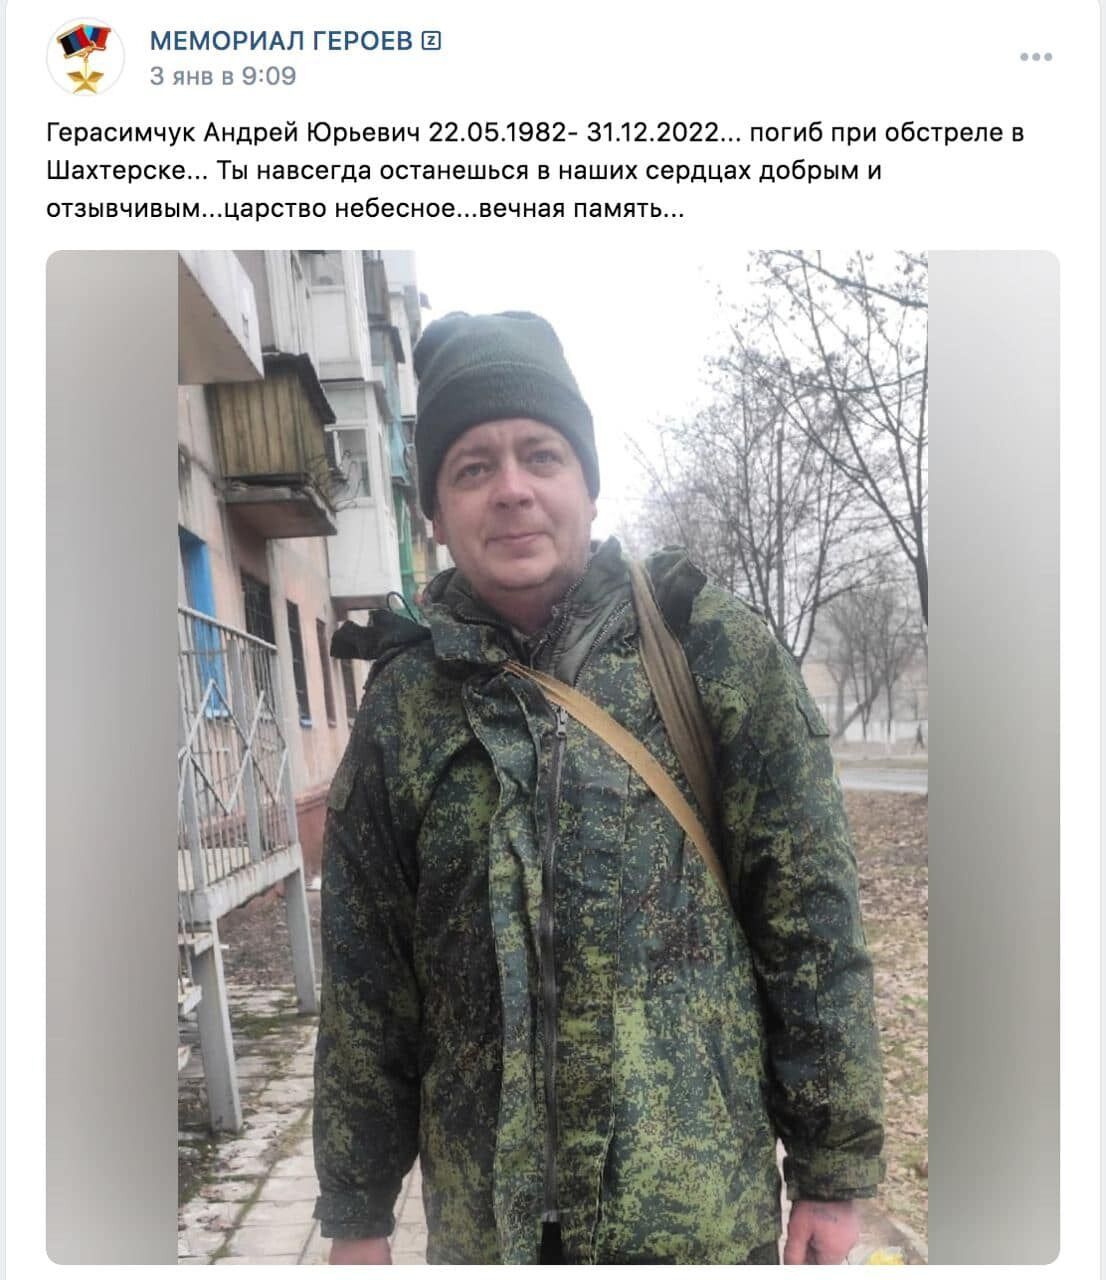 ''Бавовна'' была не только в Макеевке: всплыли подробности работы HIMARS по оккупантам в Шахтерске